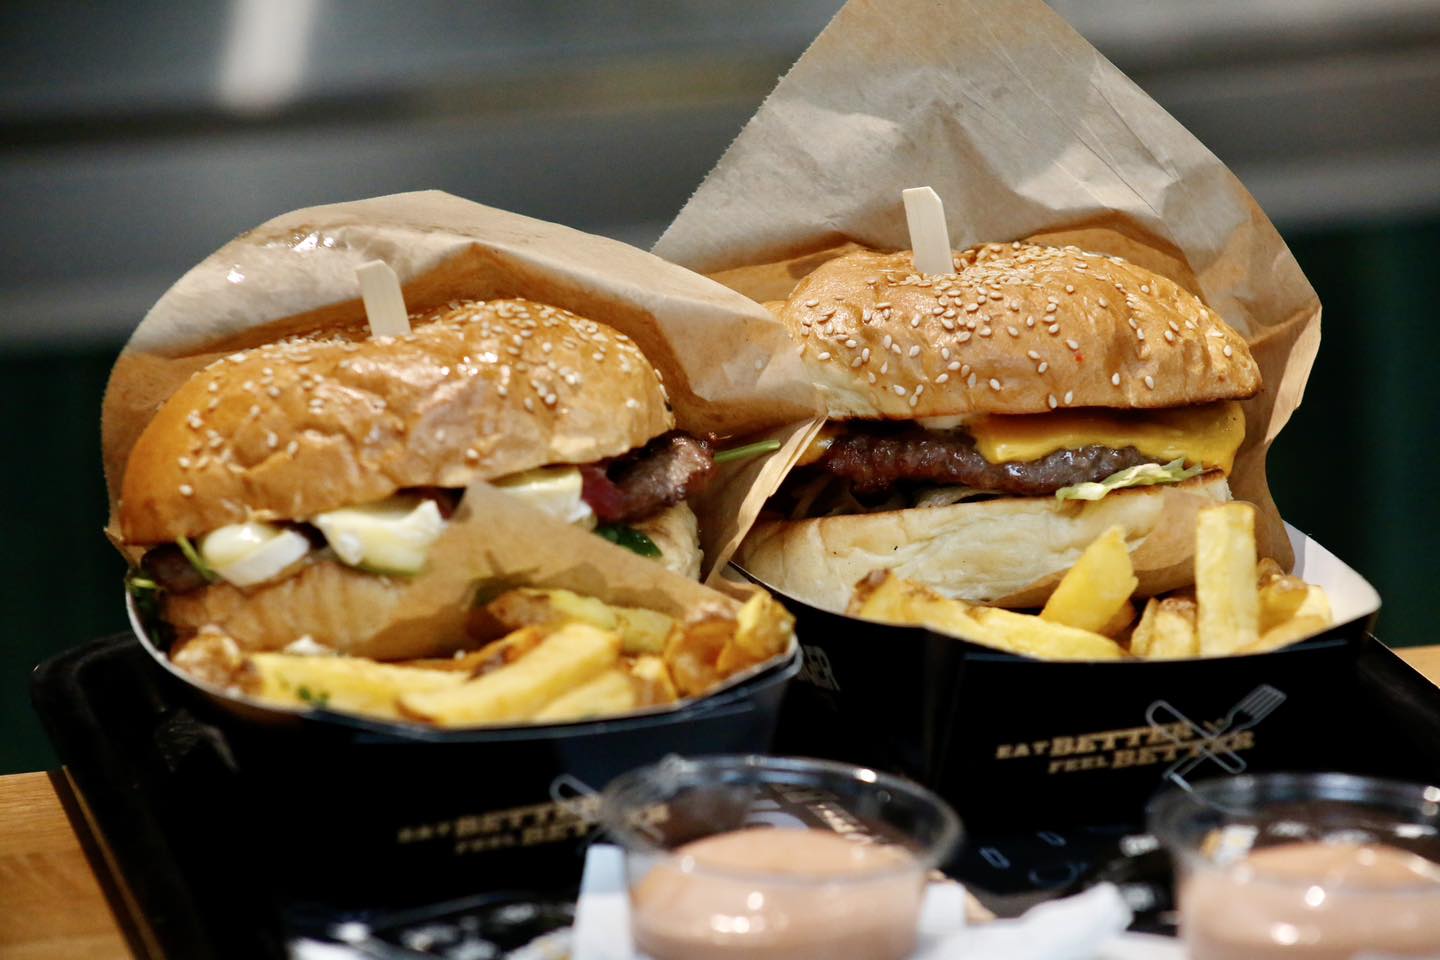 Kronburger – Eat Better & Feel Better.